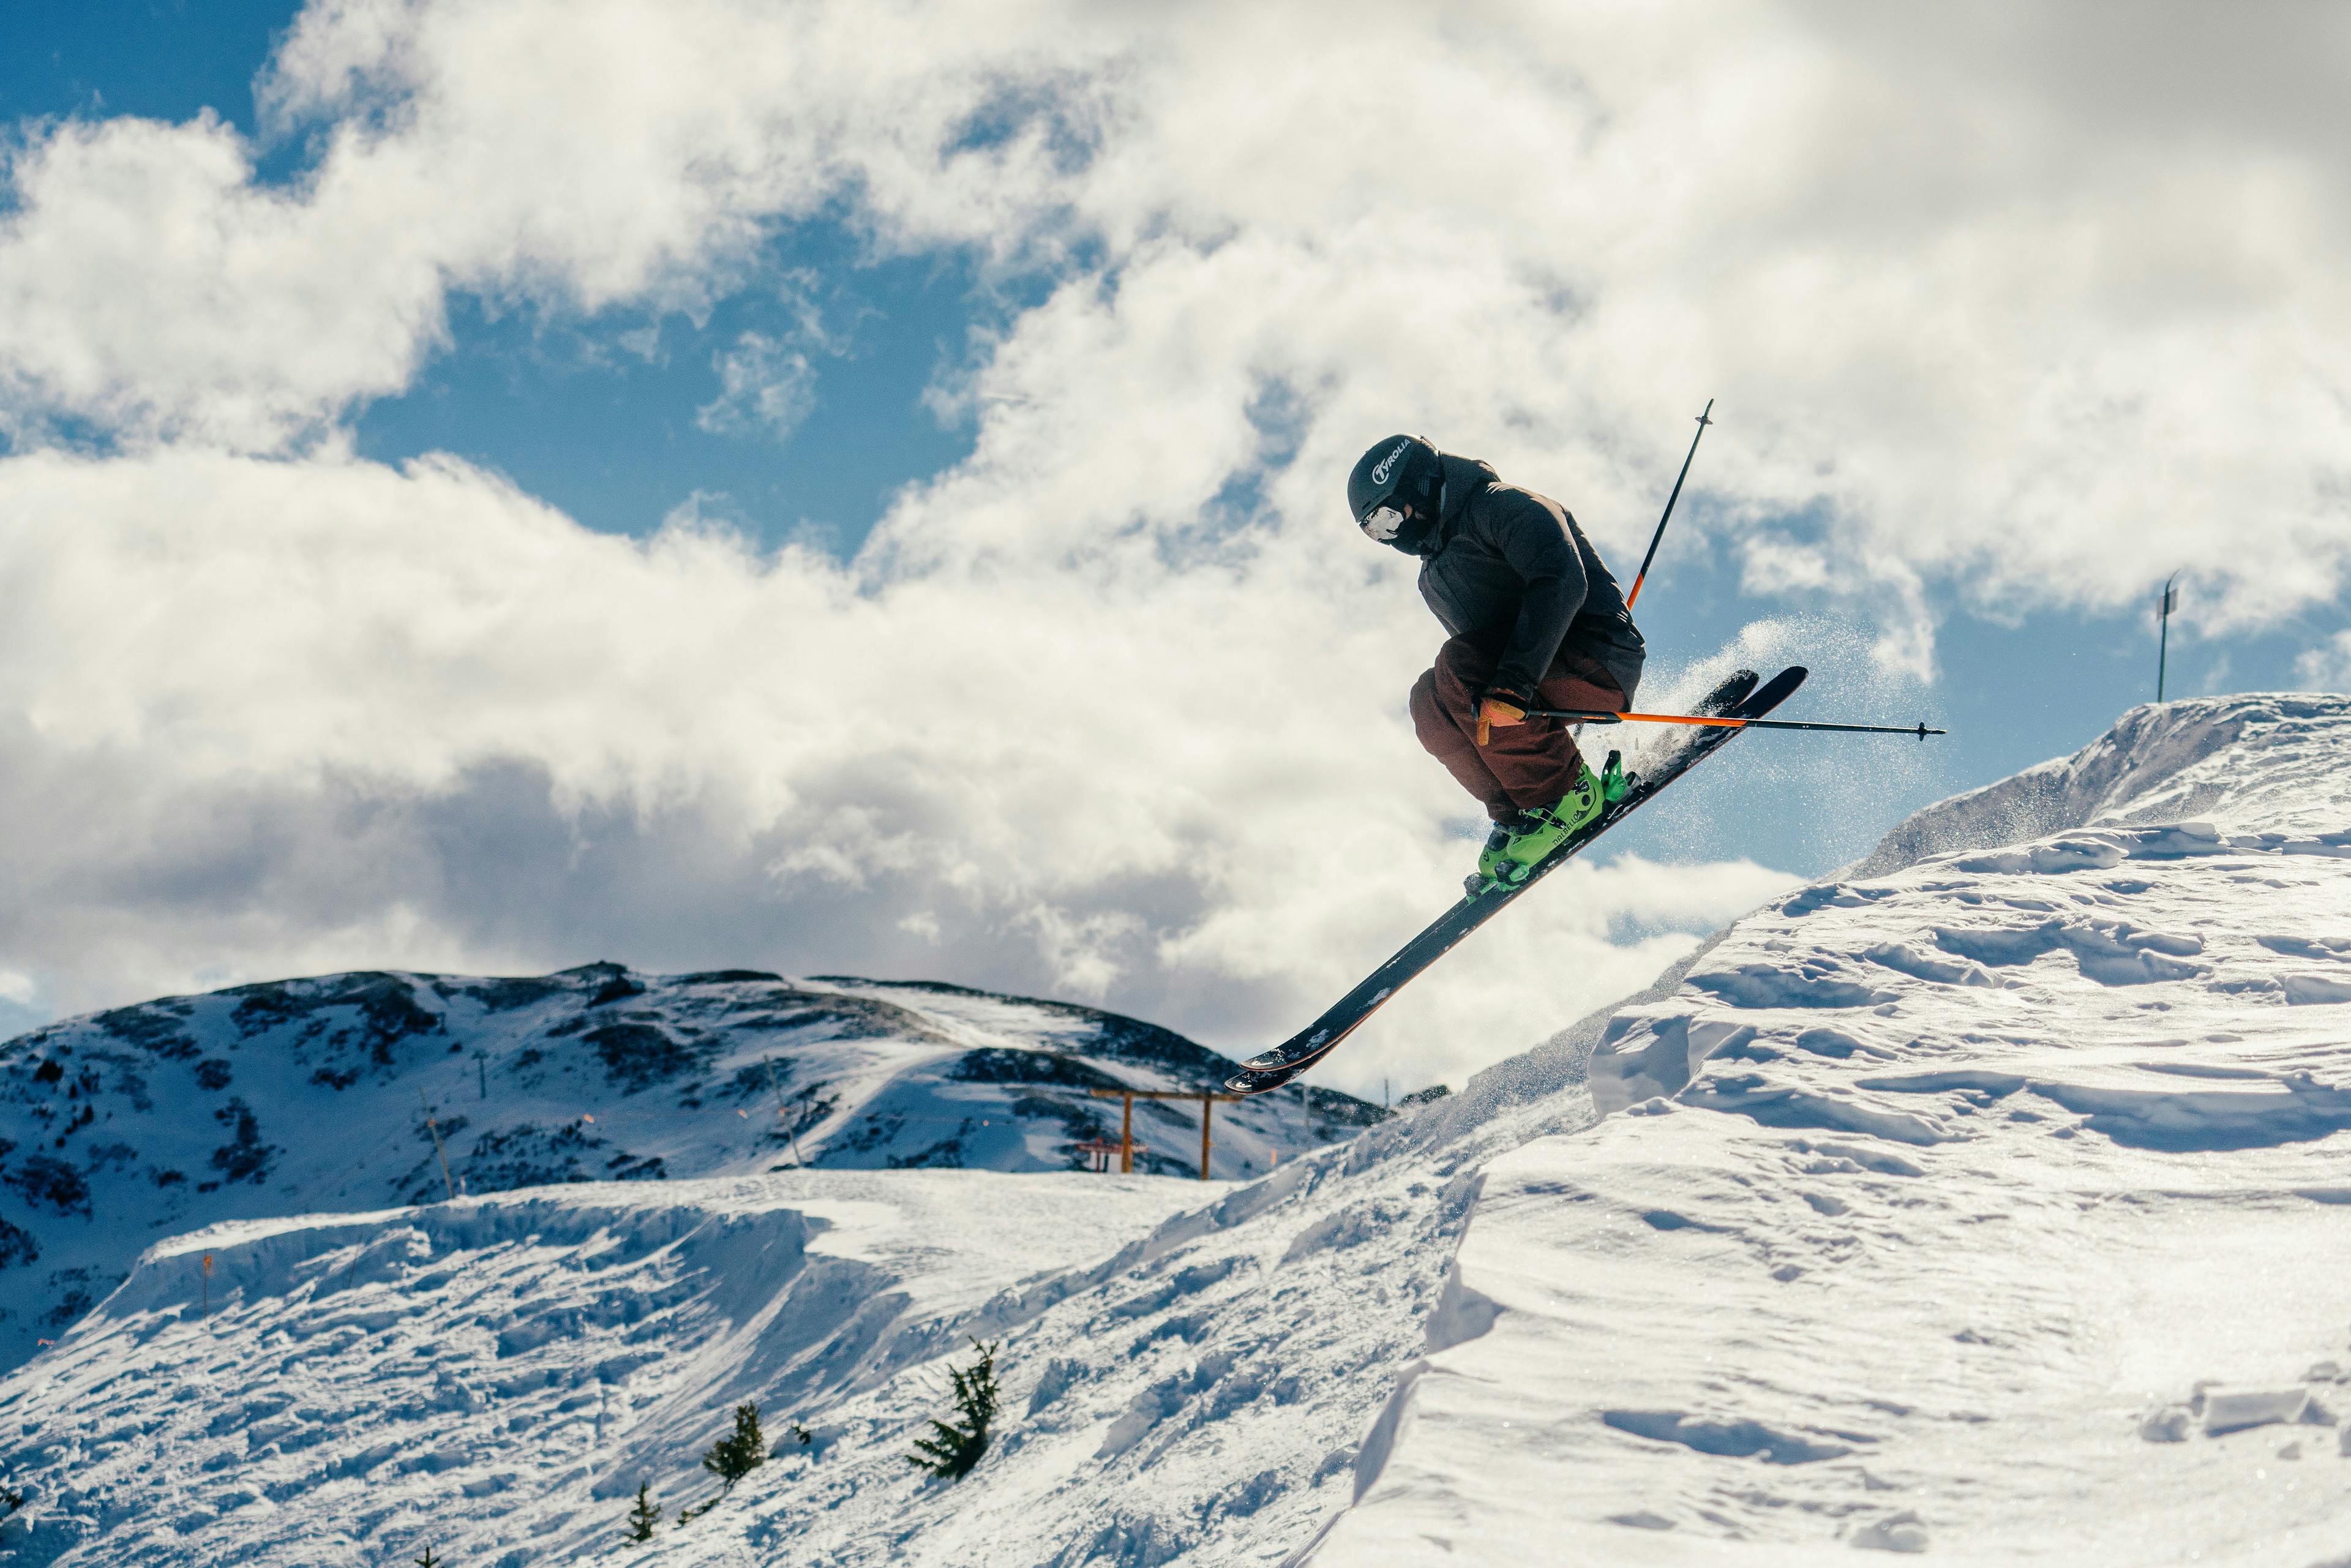 Skier catching air at Taos Ski Valley.